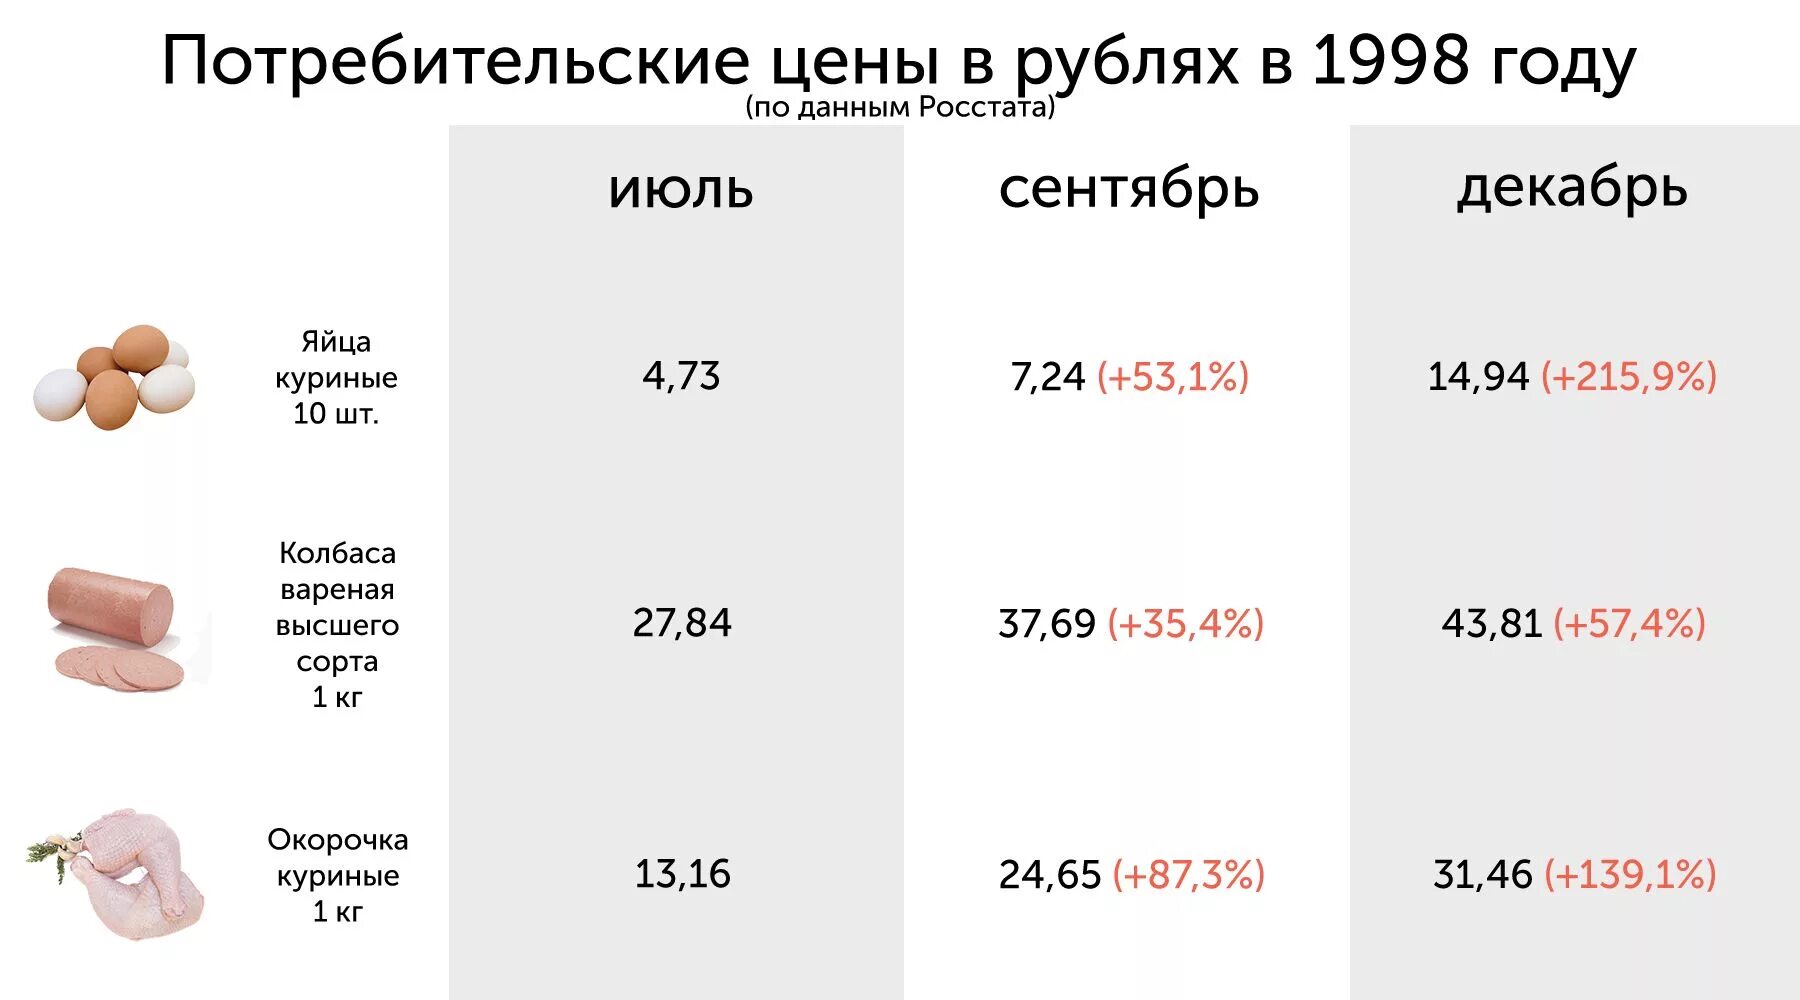 Let price. Цены на продукты в 1998 году в России. Стоимость продуктов в 1998 году. Цены в 1998 году. Стоимость хлеба в 1997 году.